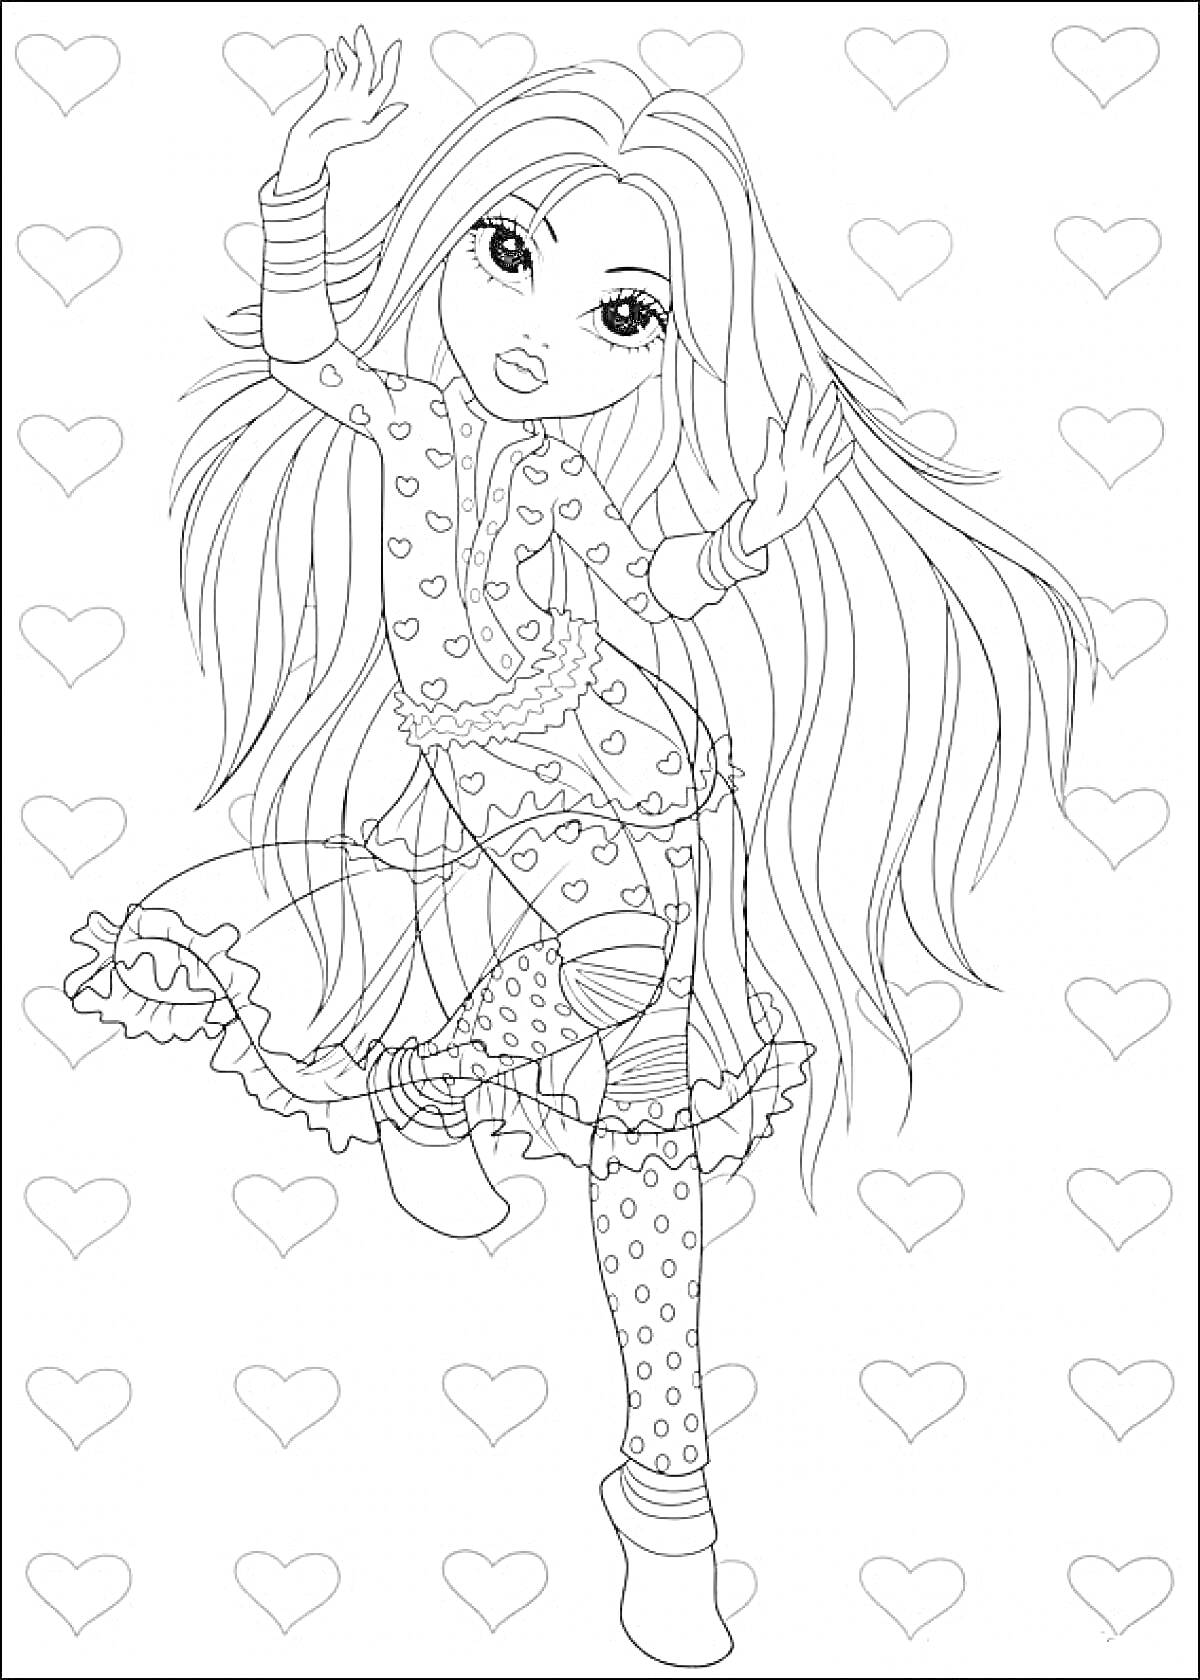 Раскраска Девочка с длинными волосами в платье и леггинсах на фоне сердца